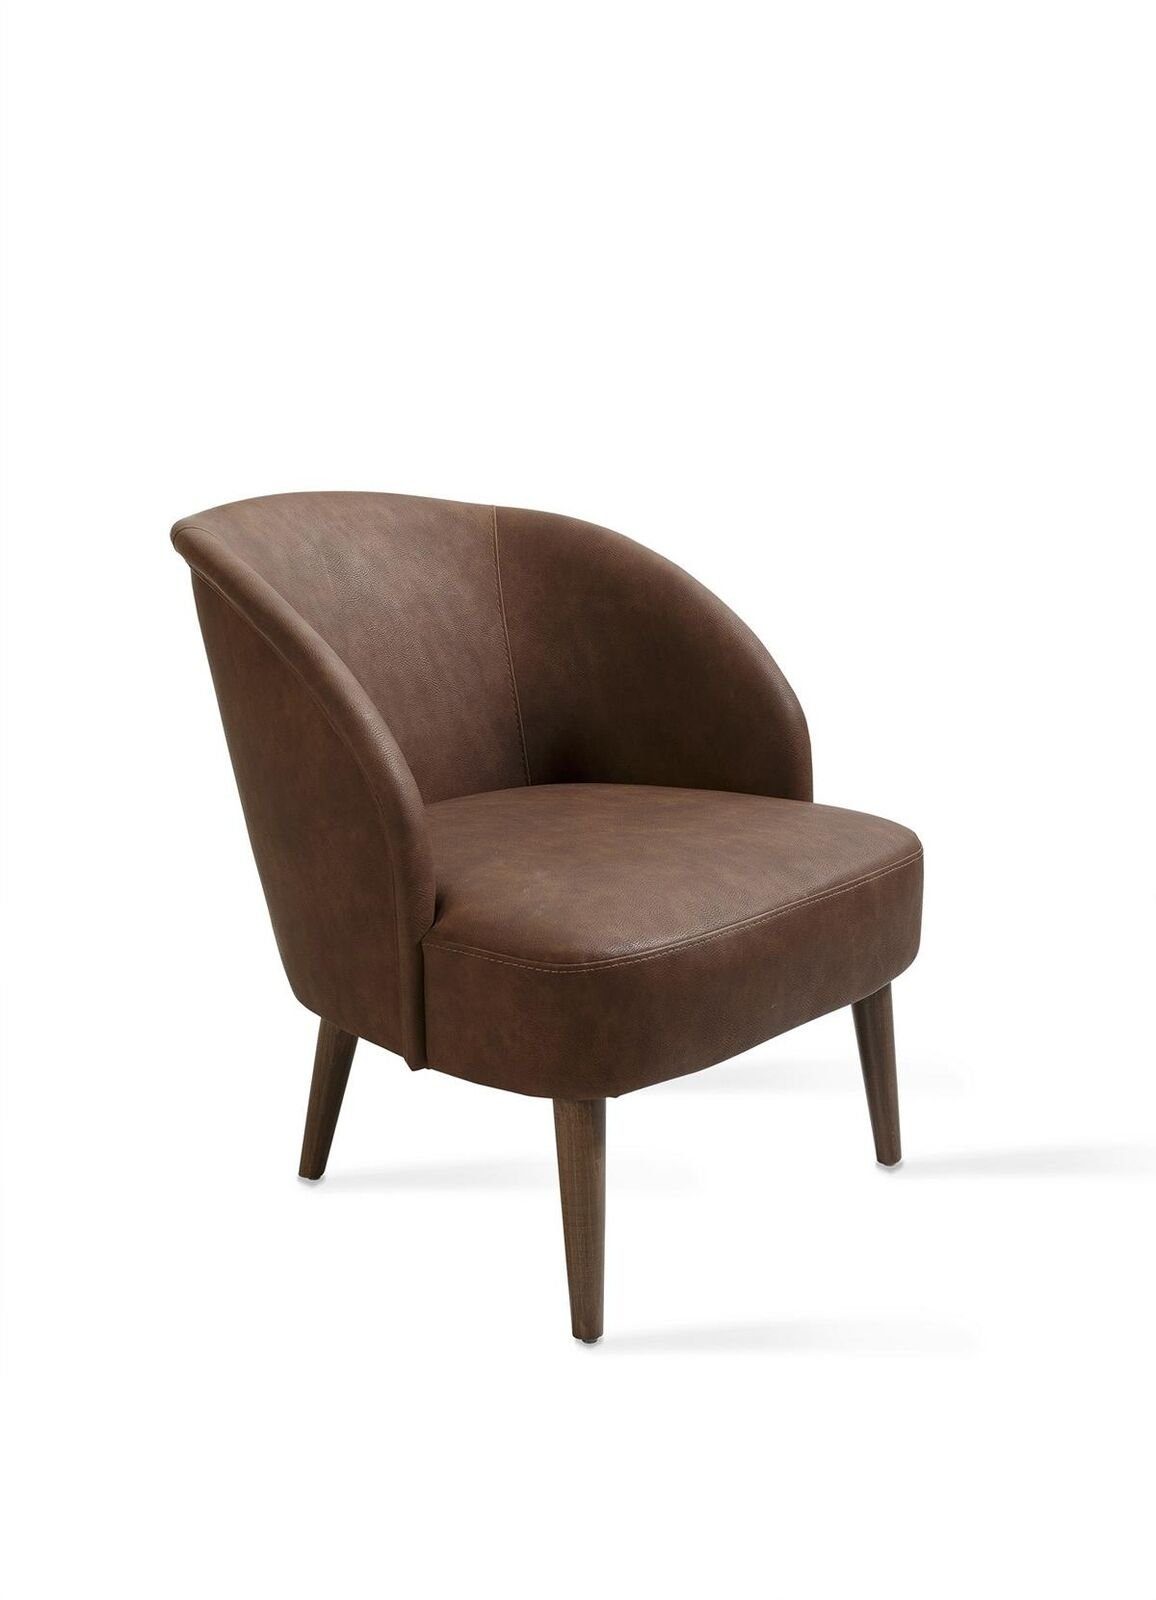 JVmoebel Stuhl Modern Braun Sessel Polstermöbel Wohnzimmer Design Einrichtung Neu, Made in Europa